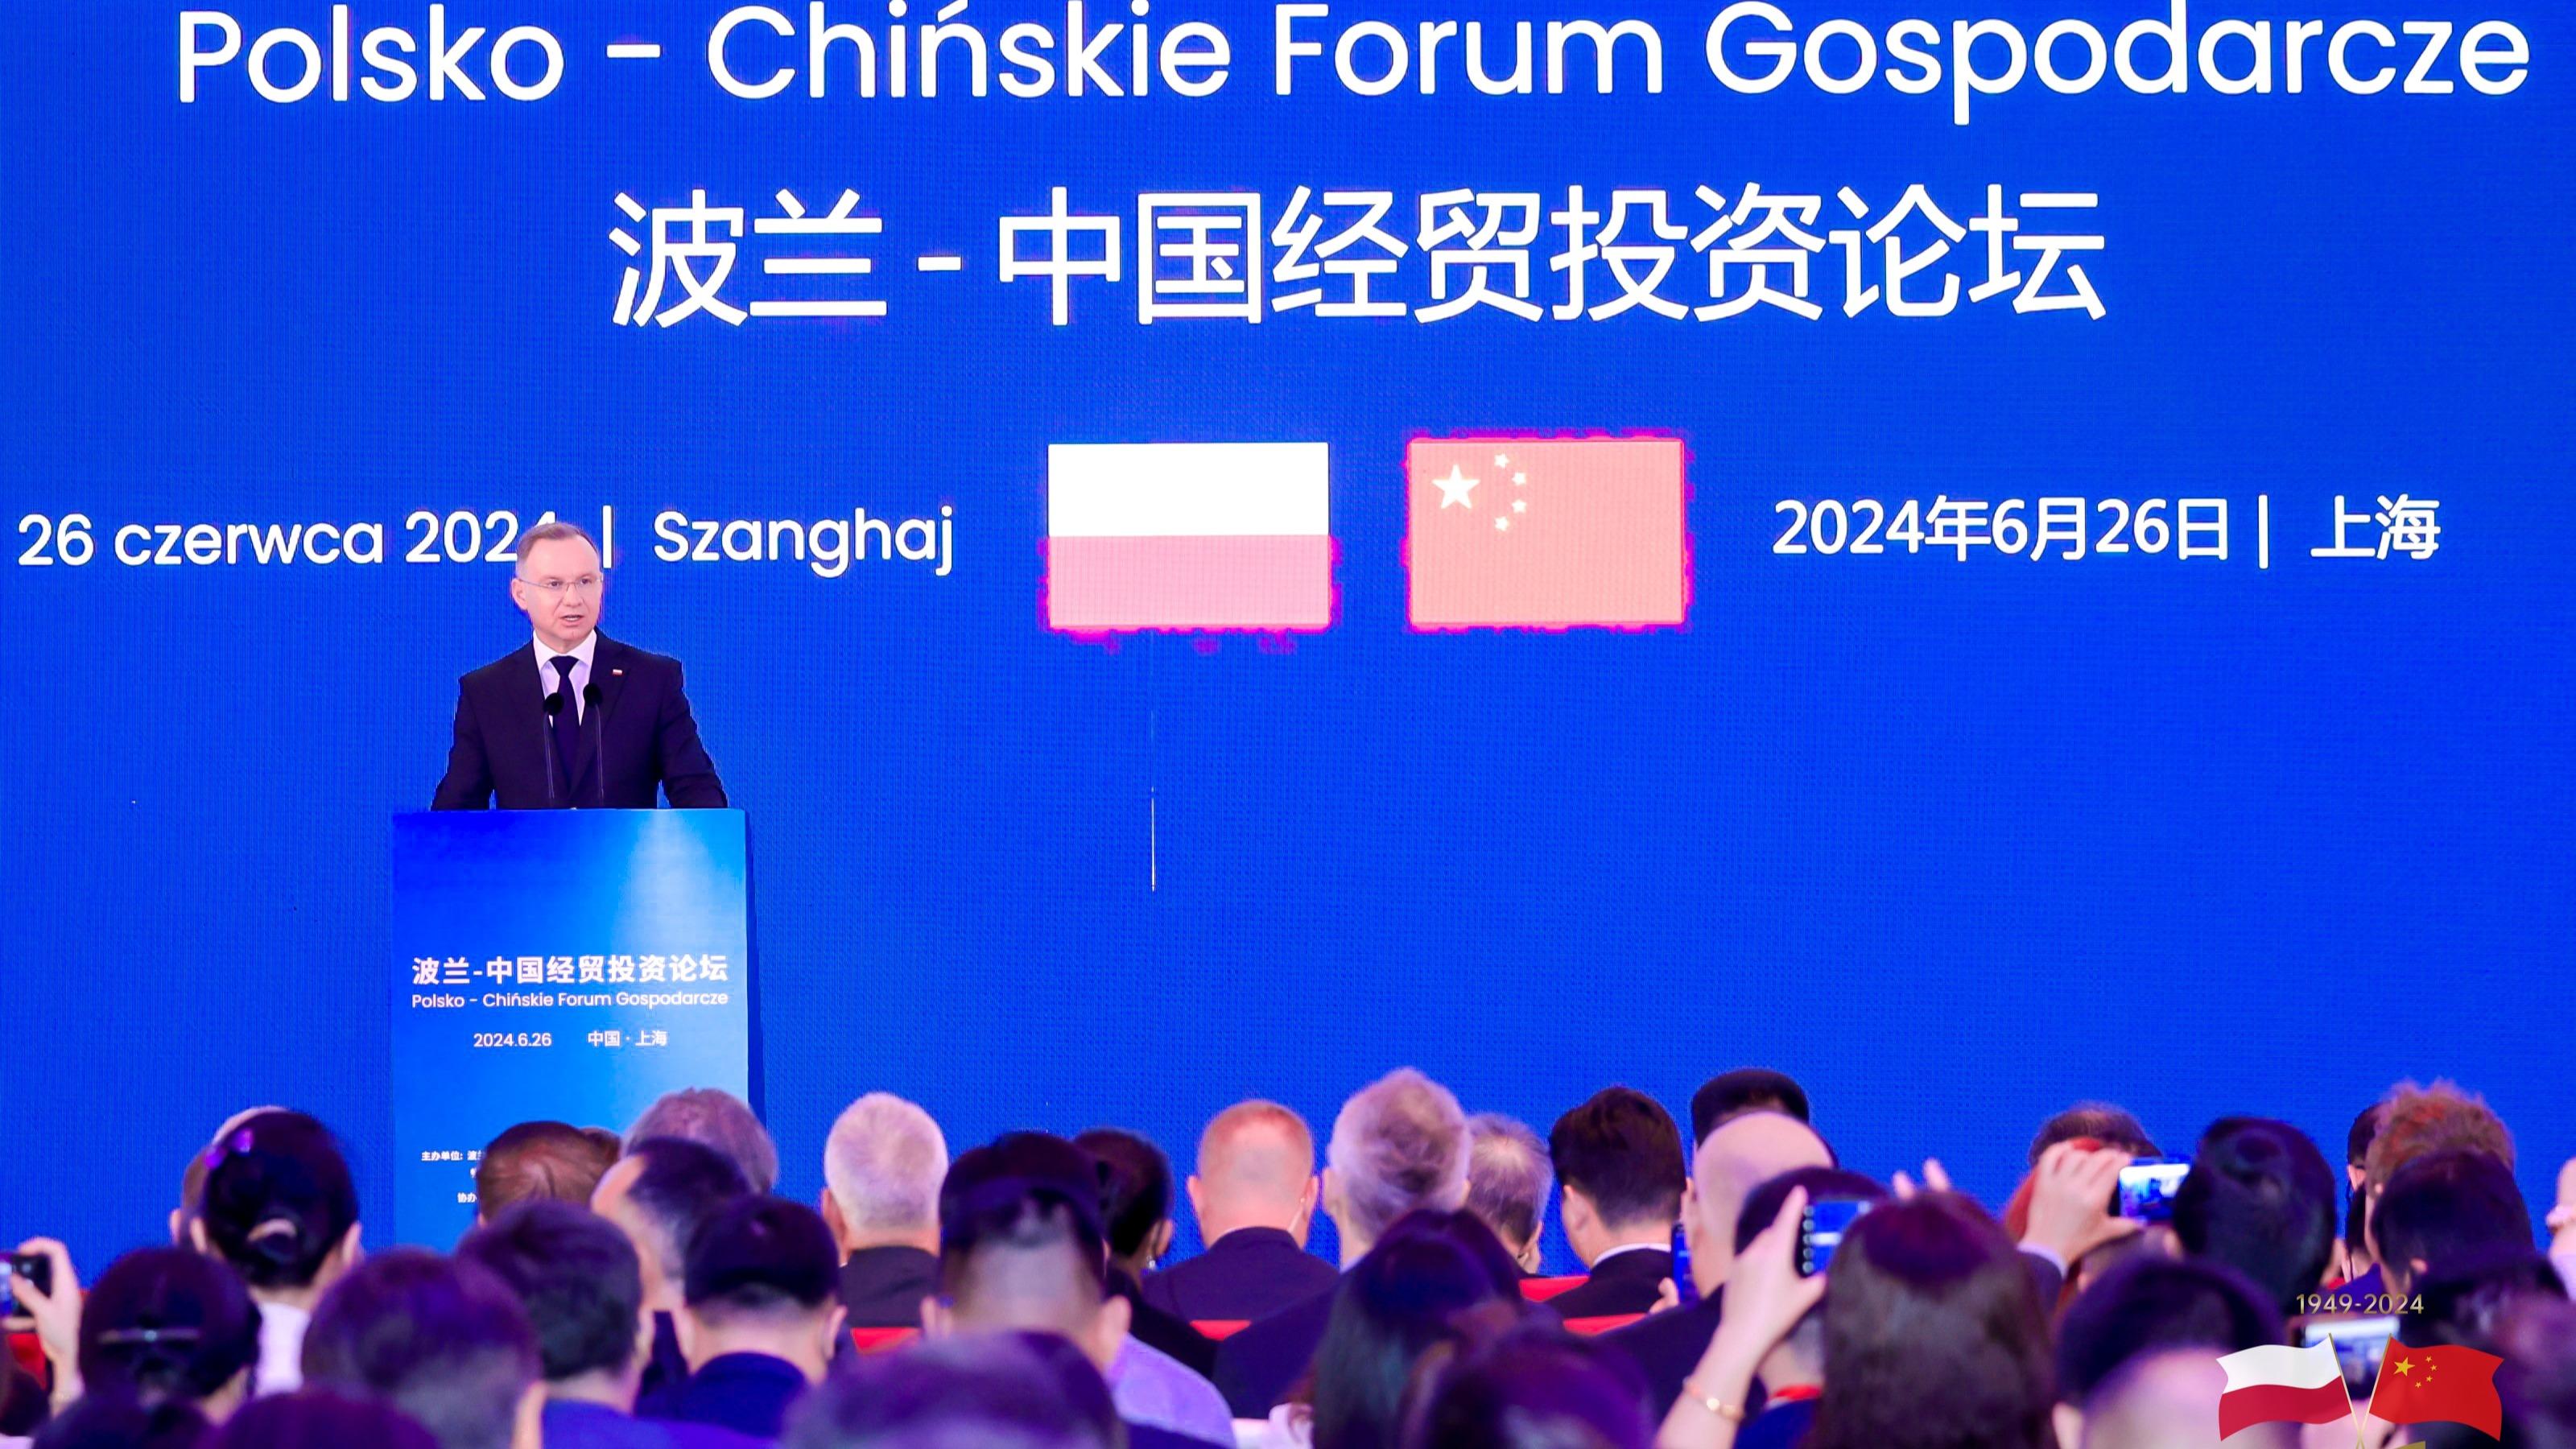  Polsko-chińskie forum gospodarcze w Szanghaju – Prezydent RP zachęca do wzajemnej współpracy gospodarczej